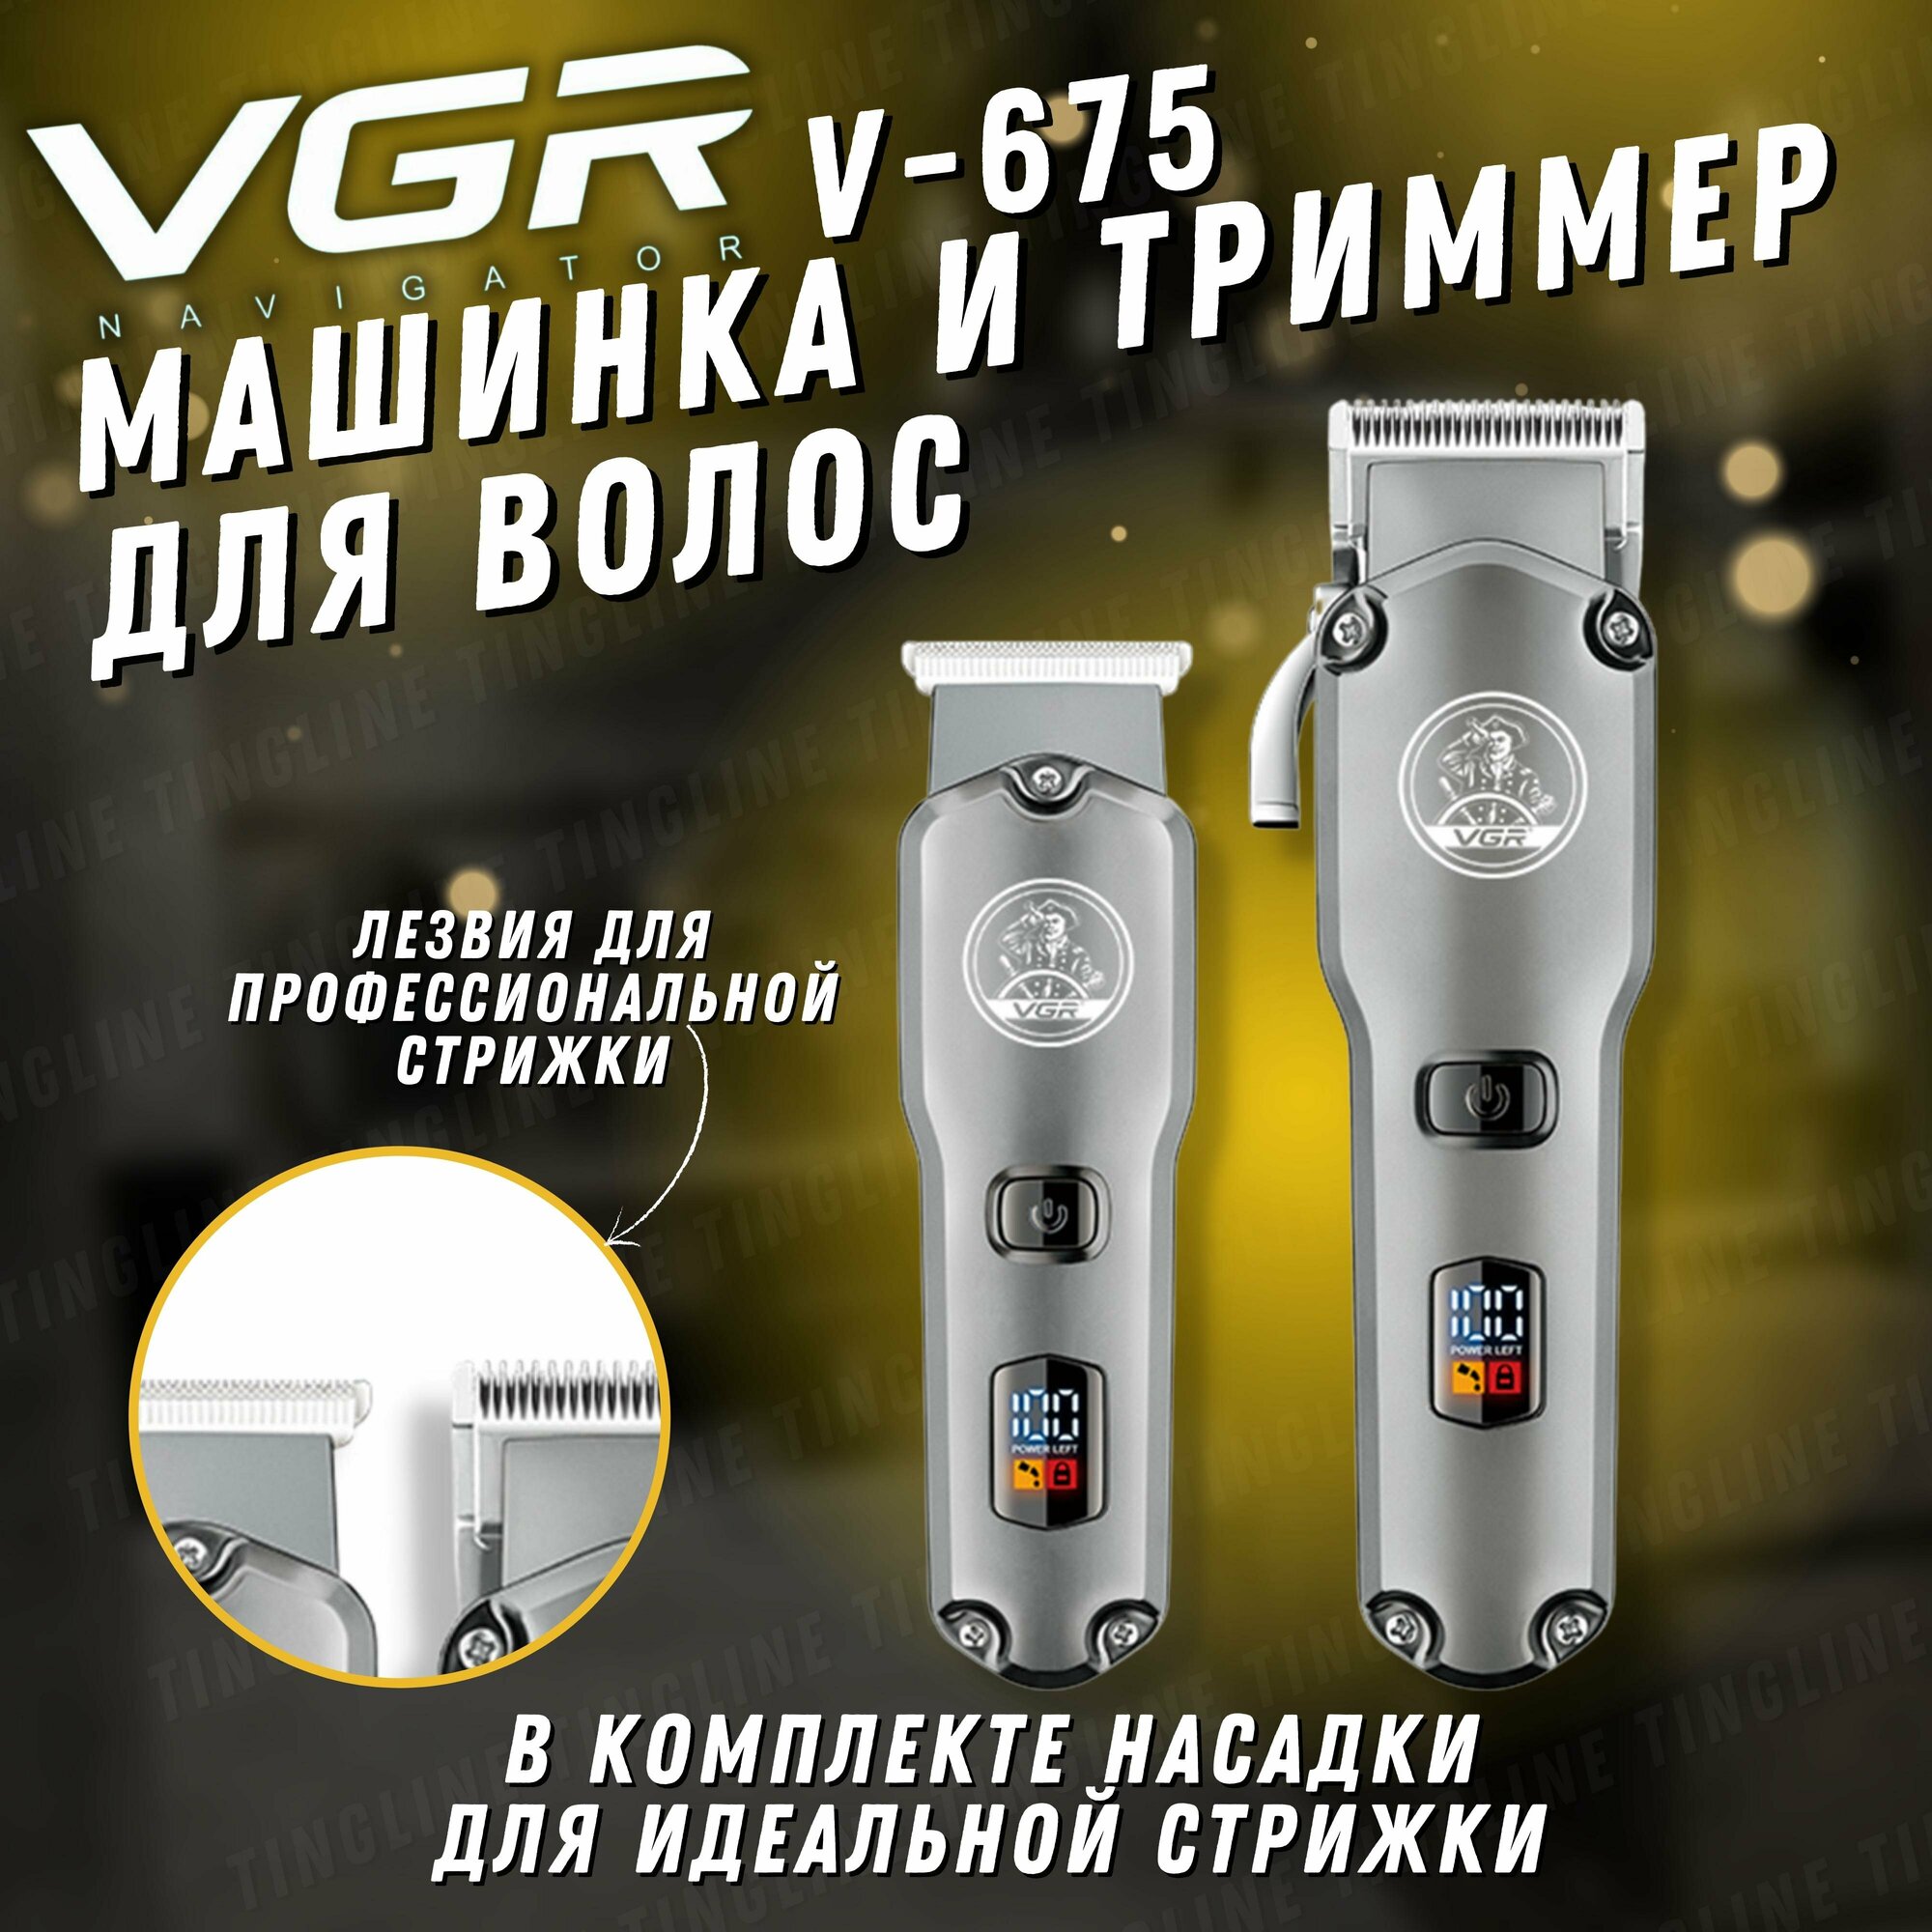 Машинка для стрижки волос профессиональная триммер для бороды и усов 2 в 1 VGR V-675